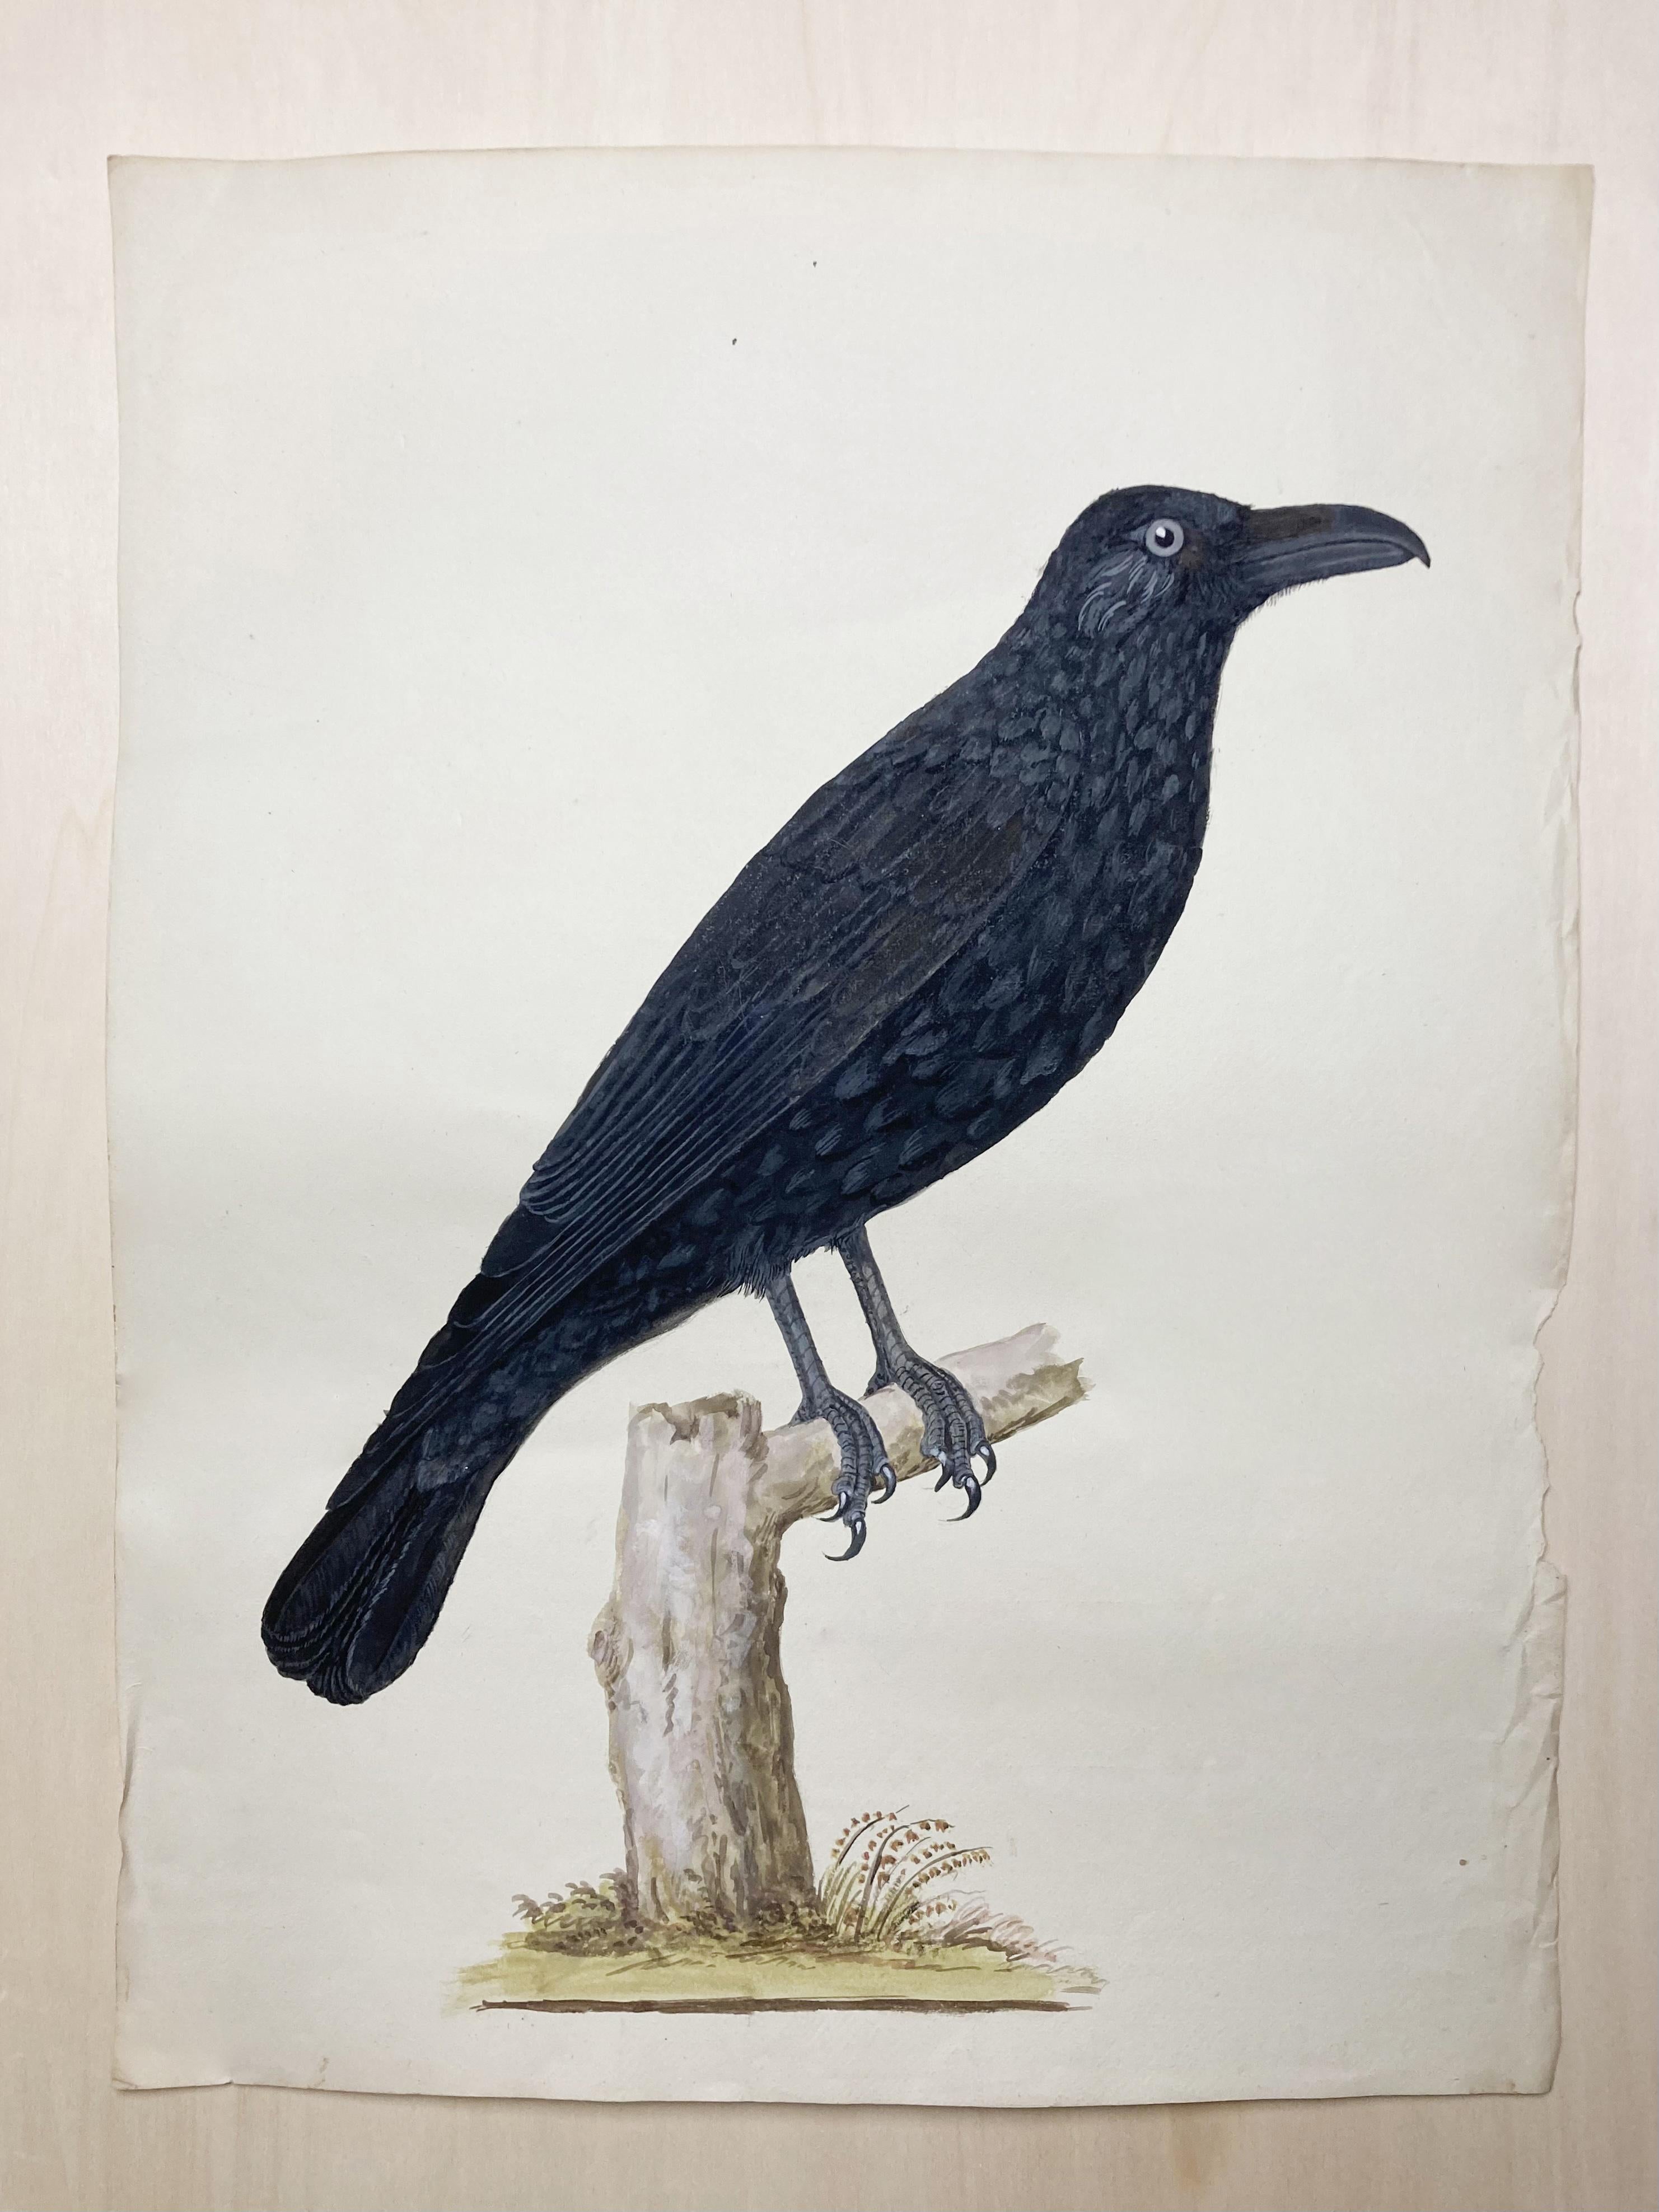 Animal Art Peter Paillou - Dessin animalier d'un Crow assis en noir par un peintre britannique éclairé.